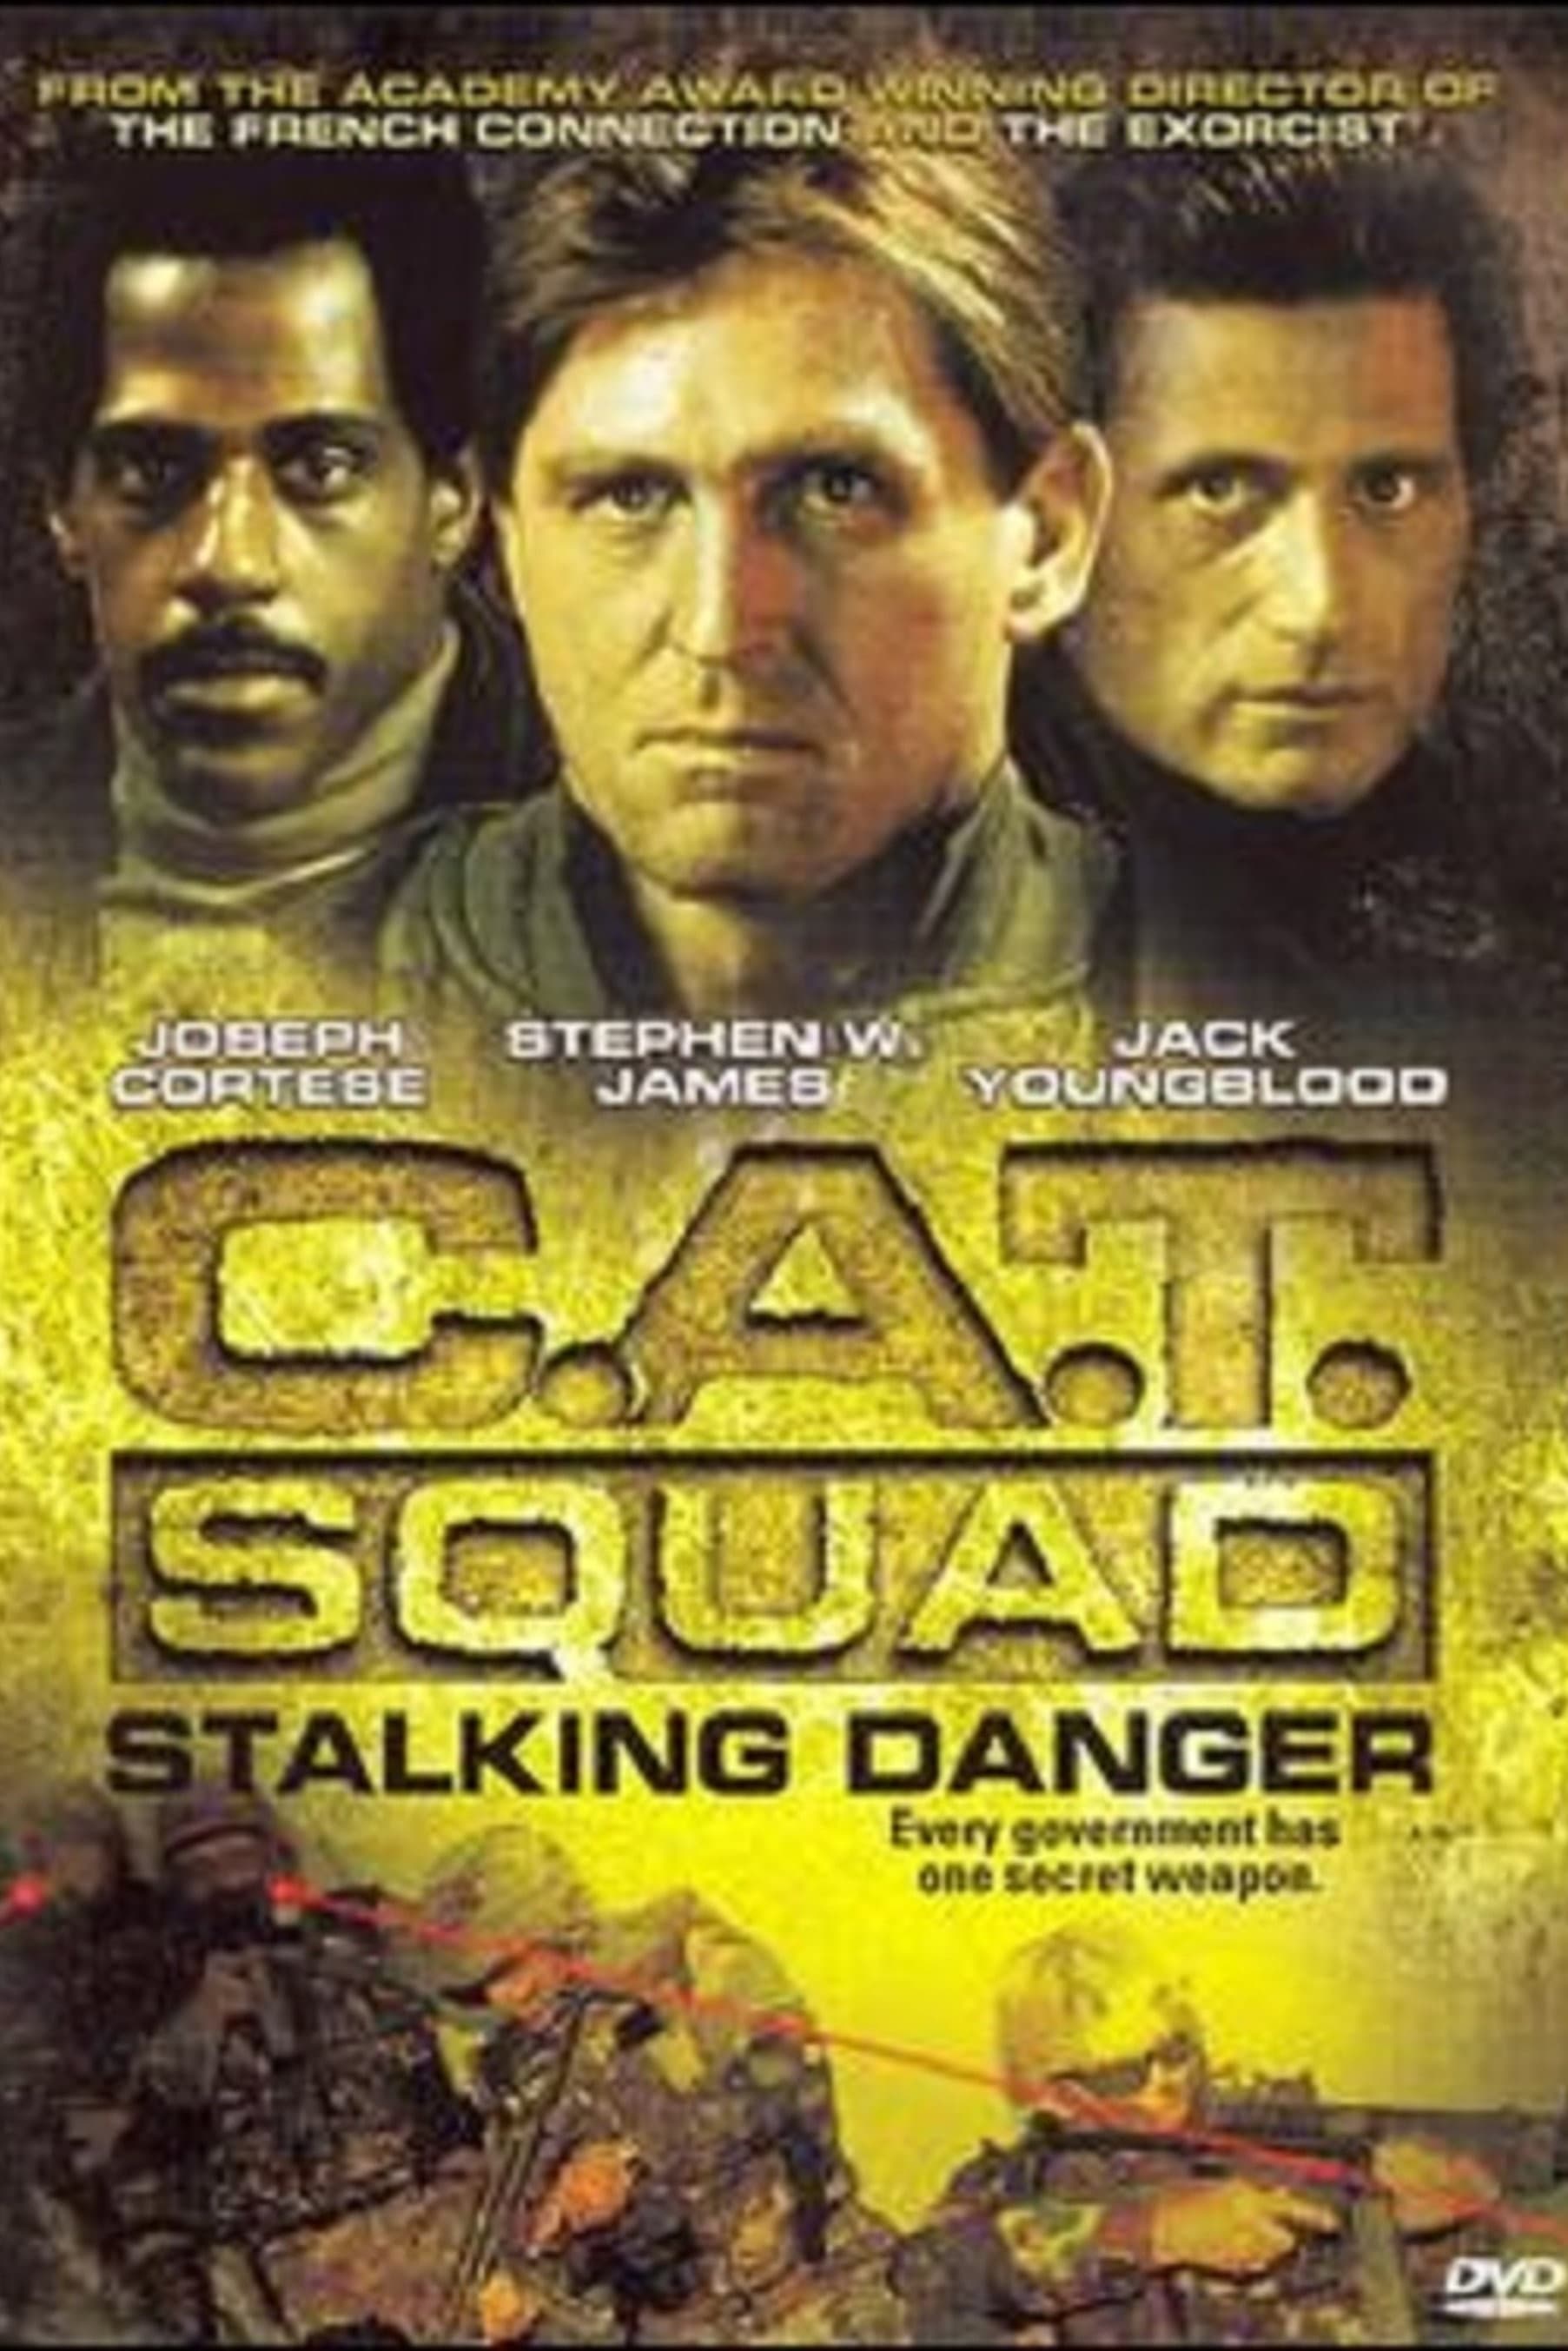 C.A.T. Squad (1986)